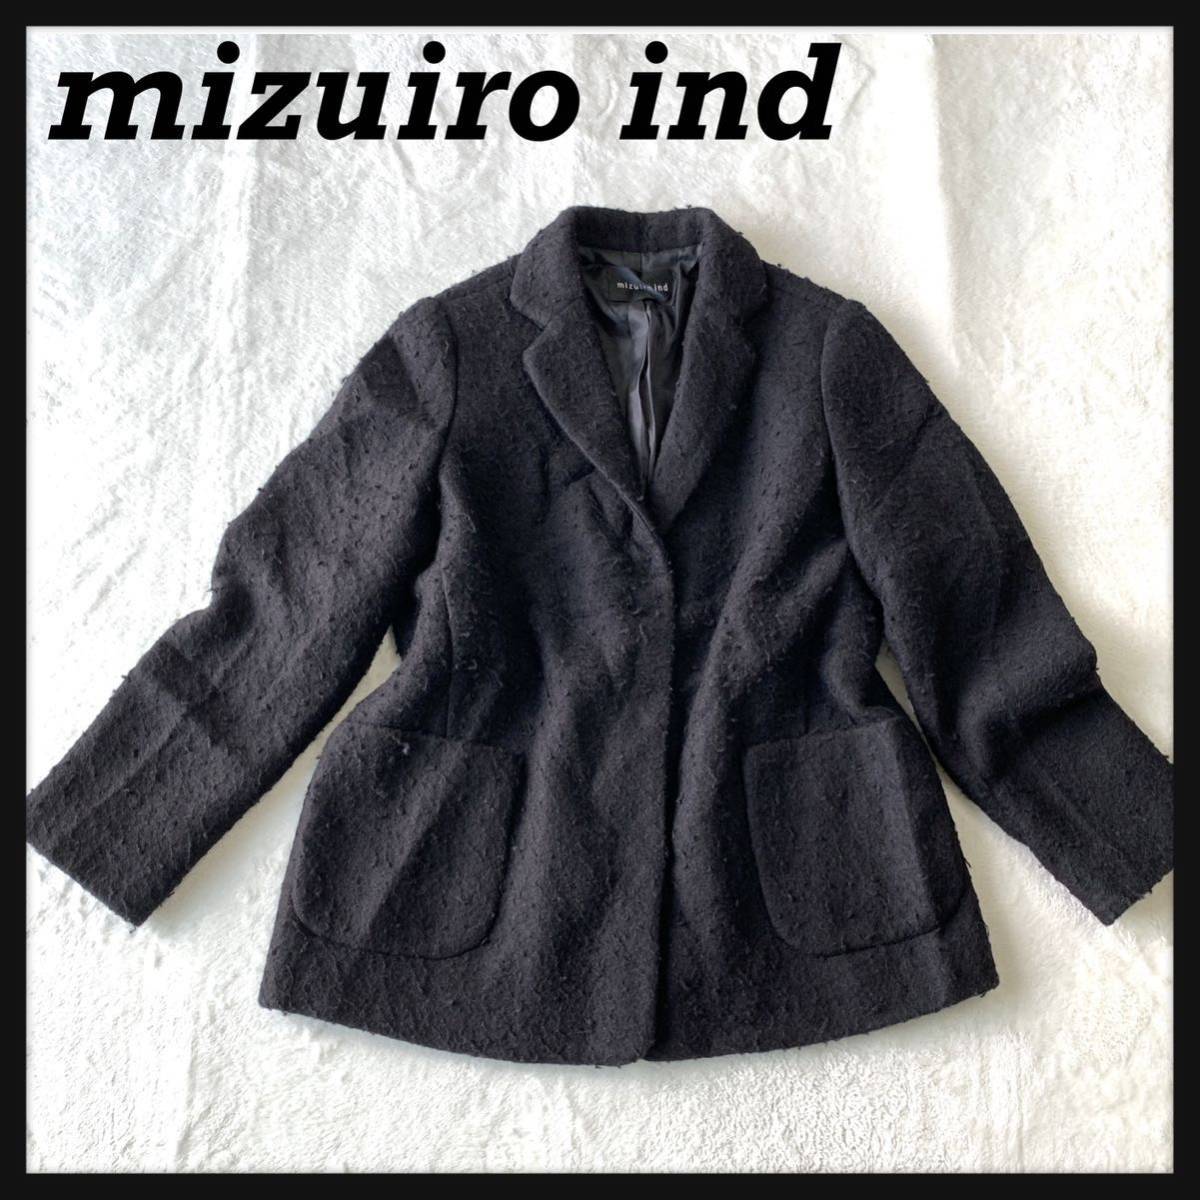 【人気】mizuiro ind ミズイロインド ウール テーラード ジャケット スナップボタン ナッピング加工